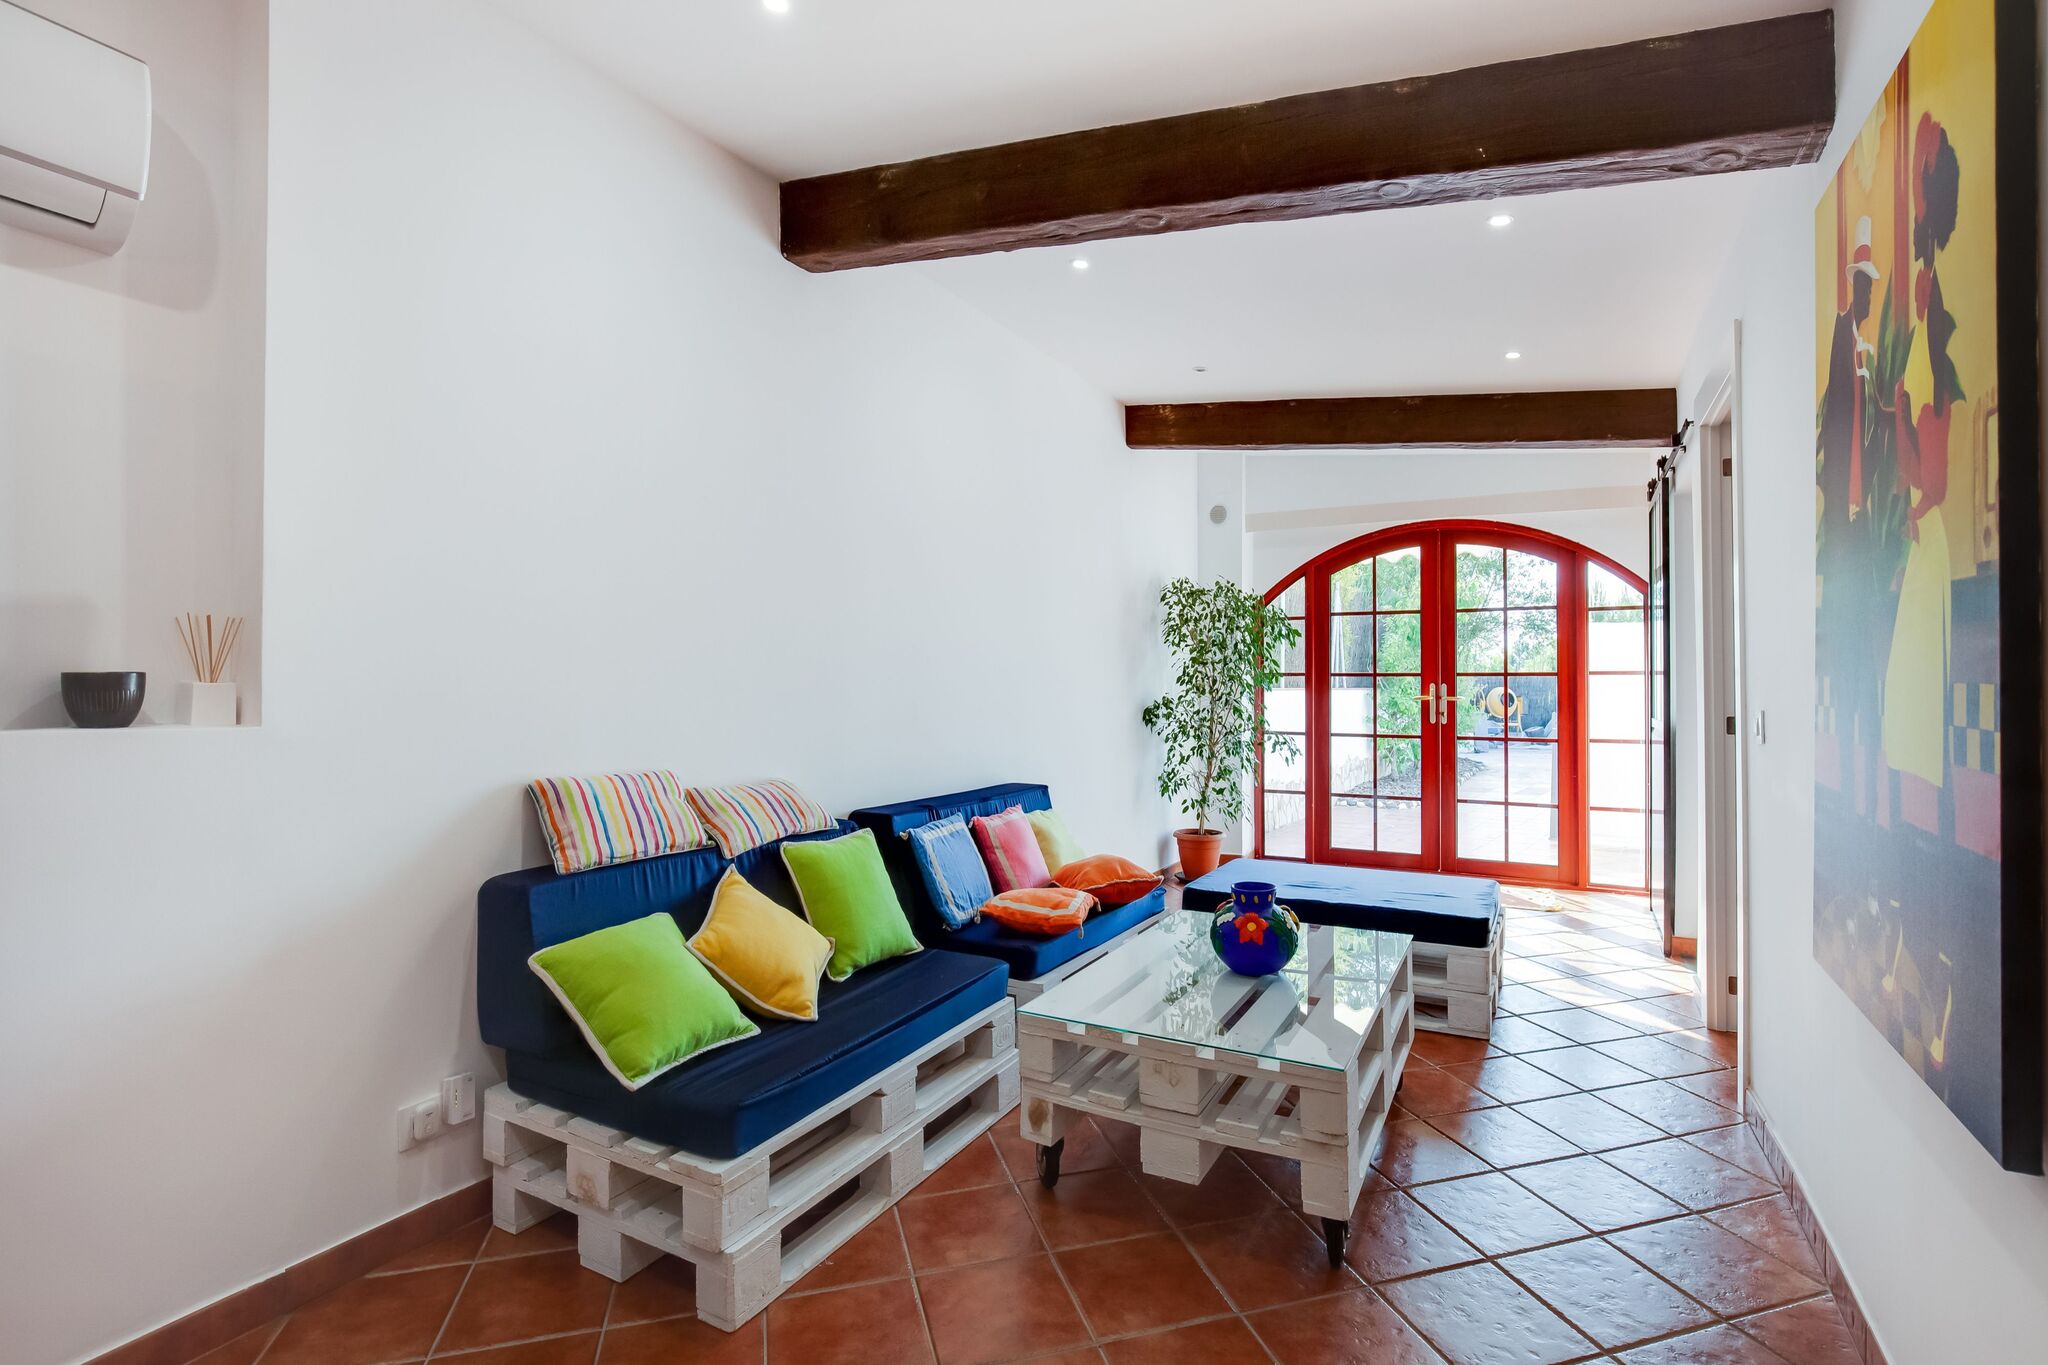 Maison de vacances spacieuse à Gérone avec jardin privé